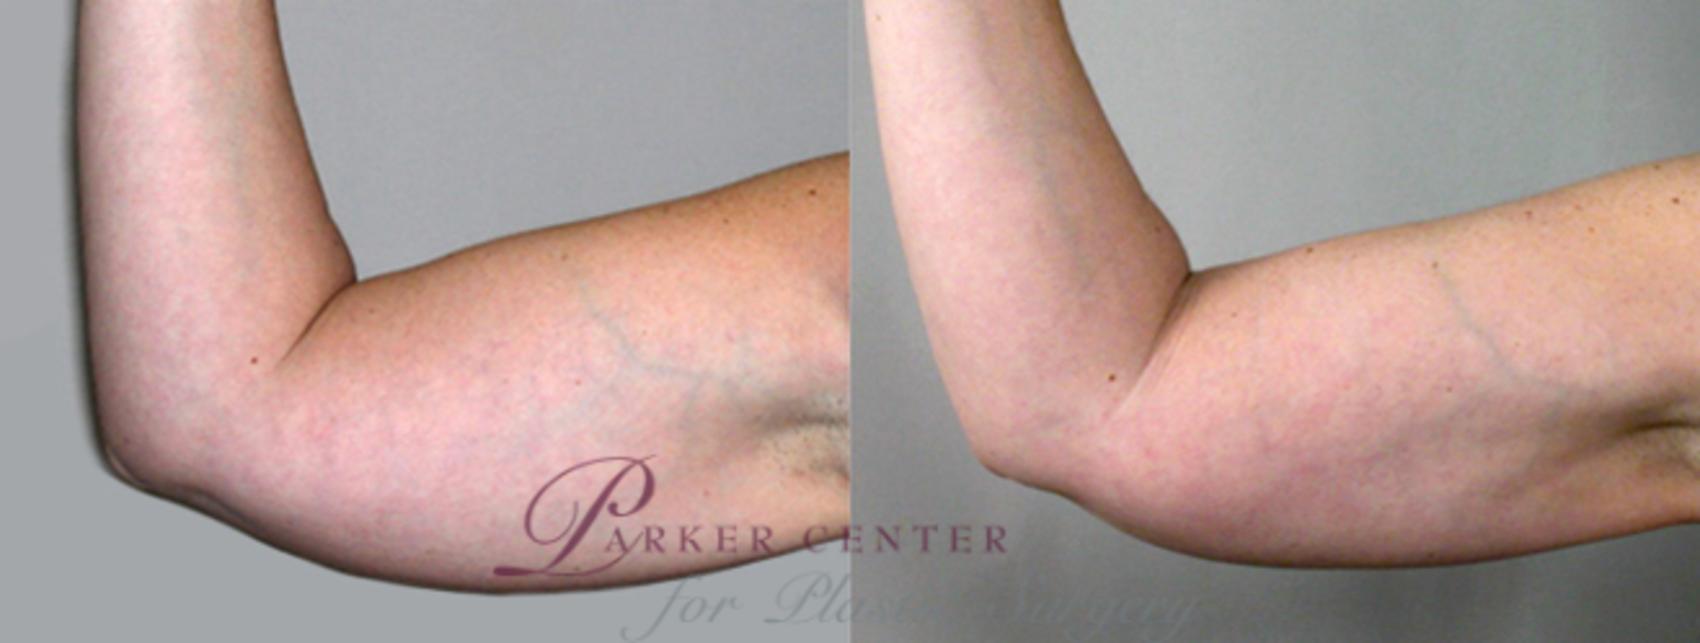 Upper Arm Rejuvenation Case 822 Before & After View #1 | Paramus, NJ | Parker Center for Plastic Surgery